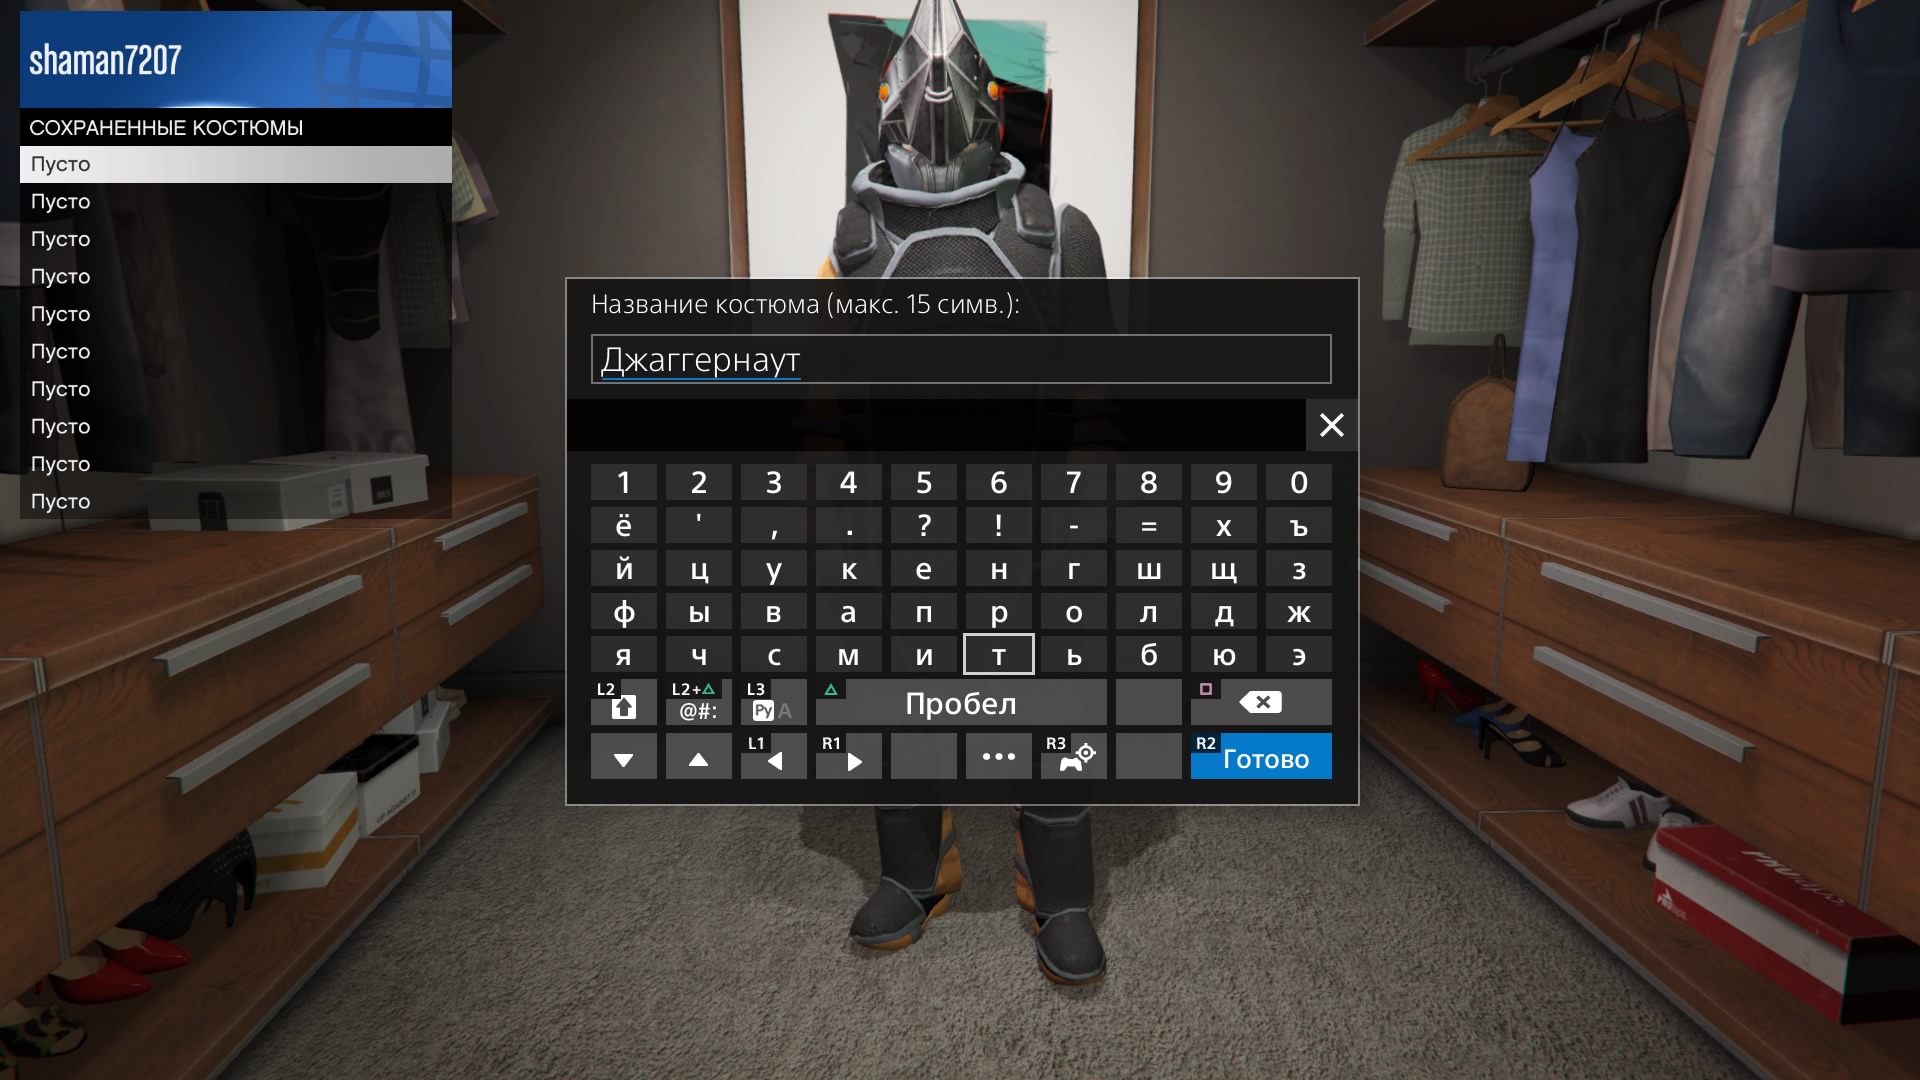 Как открыть уникальный костюм джаггернаута в GTA Online (PS4, Xbox One, PC)